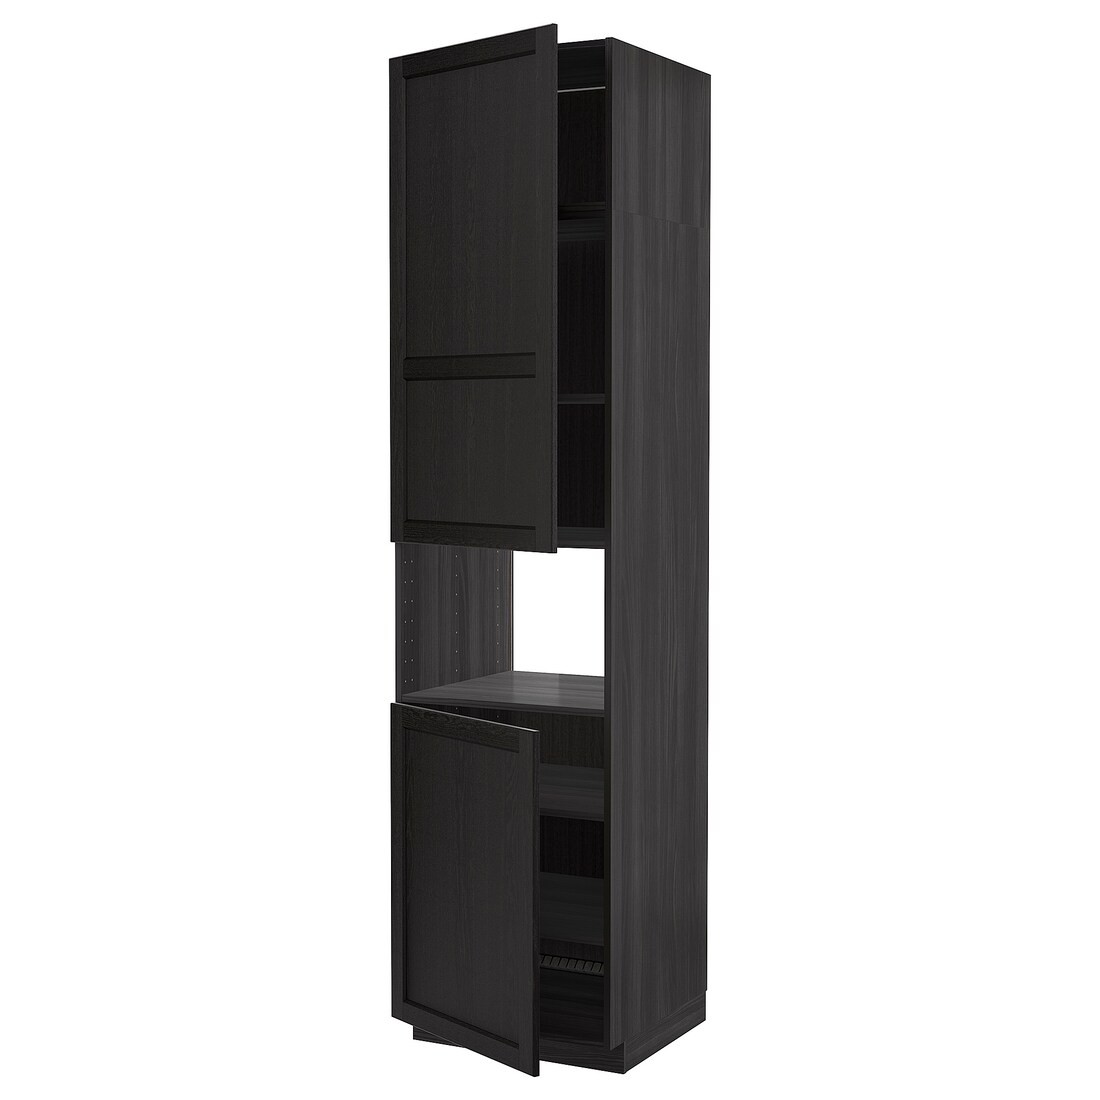 IKEA METOD МЕТОД Высокий шкаф для СВЧ / 2 дверцы / полки, черный / Lerhyttan черная морилка, 60x60x240 см 19457221 | 194.572.21